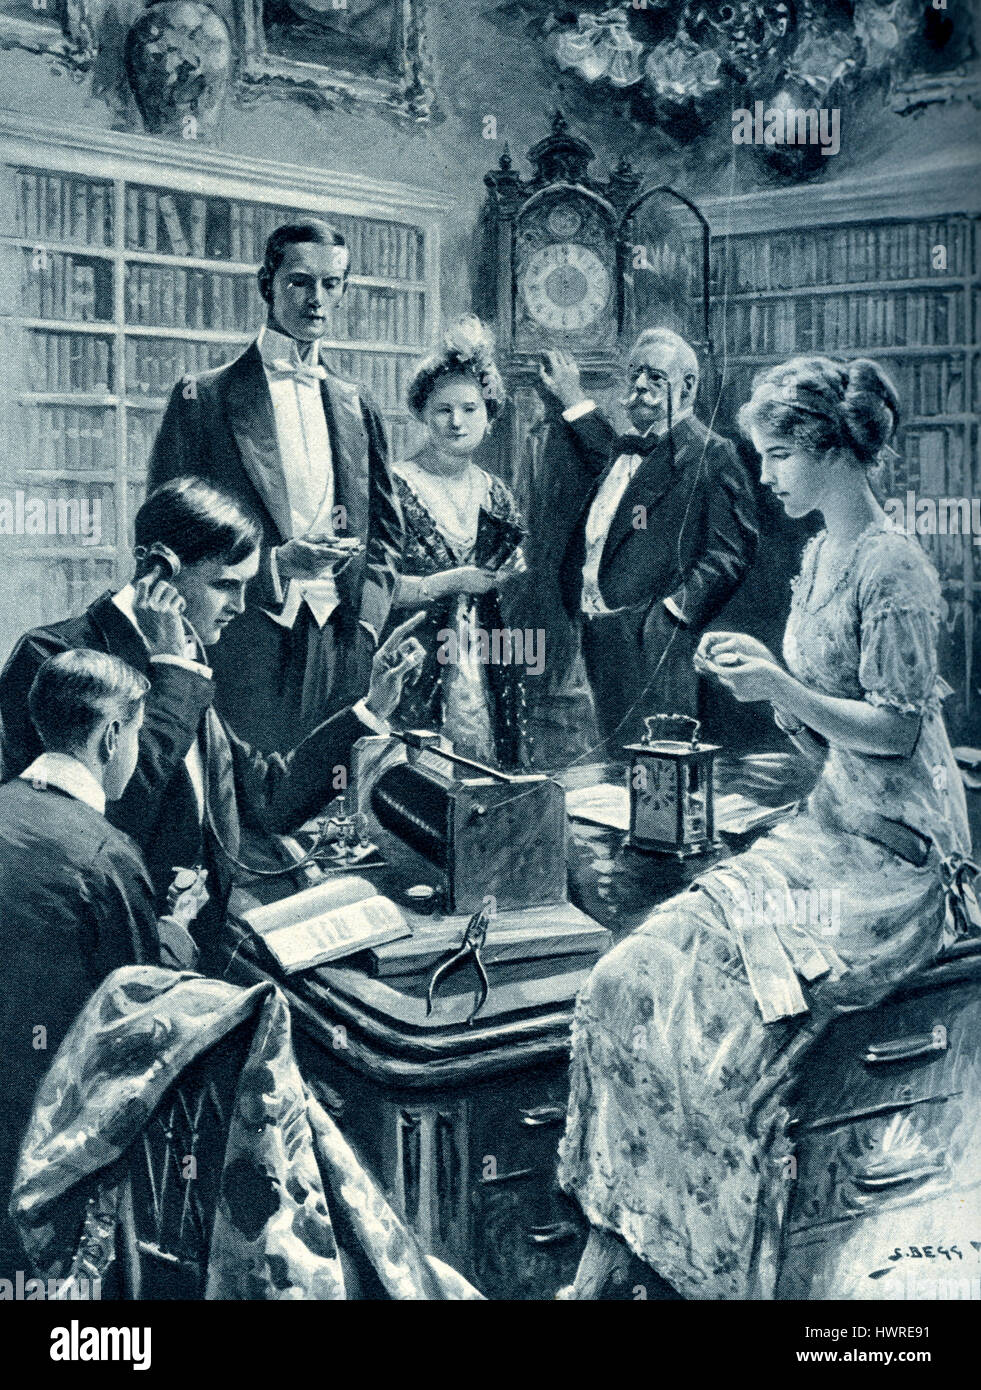 Familie setzen ihre Uhren auf Greenwich Mean Time mit einem wireless-Signal ausgestrahlt vom Eiffelturm, Paris, 1913. Prozess Beteiligten einen Kupferdraht, einer tuning Spule und ein Telefon. Stockfoto